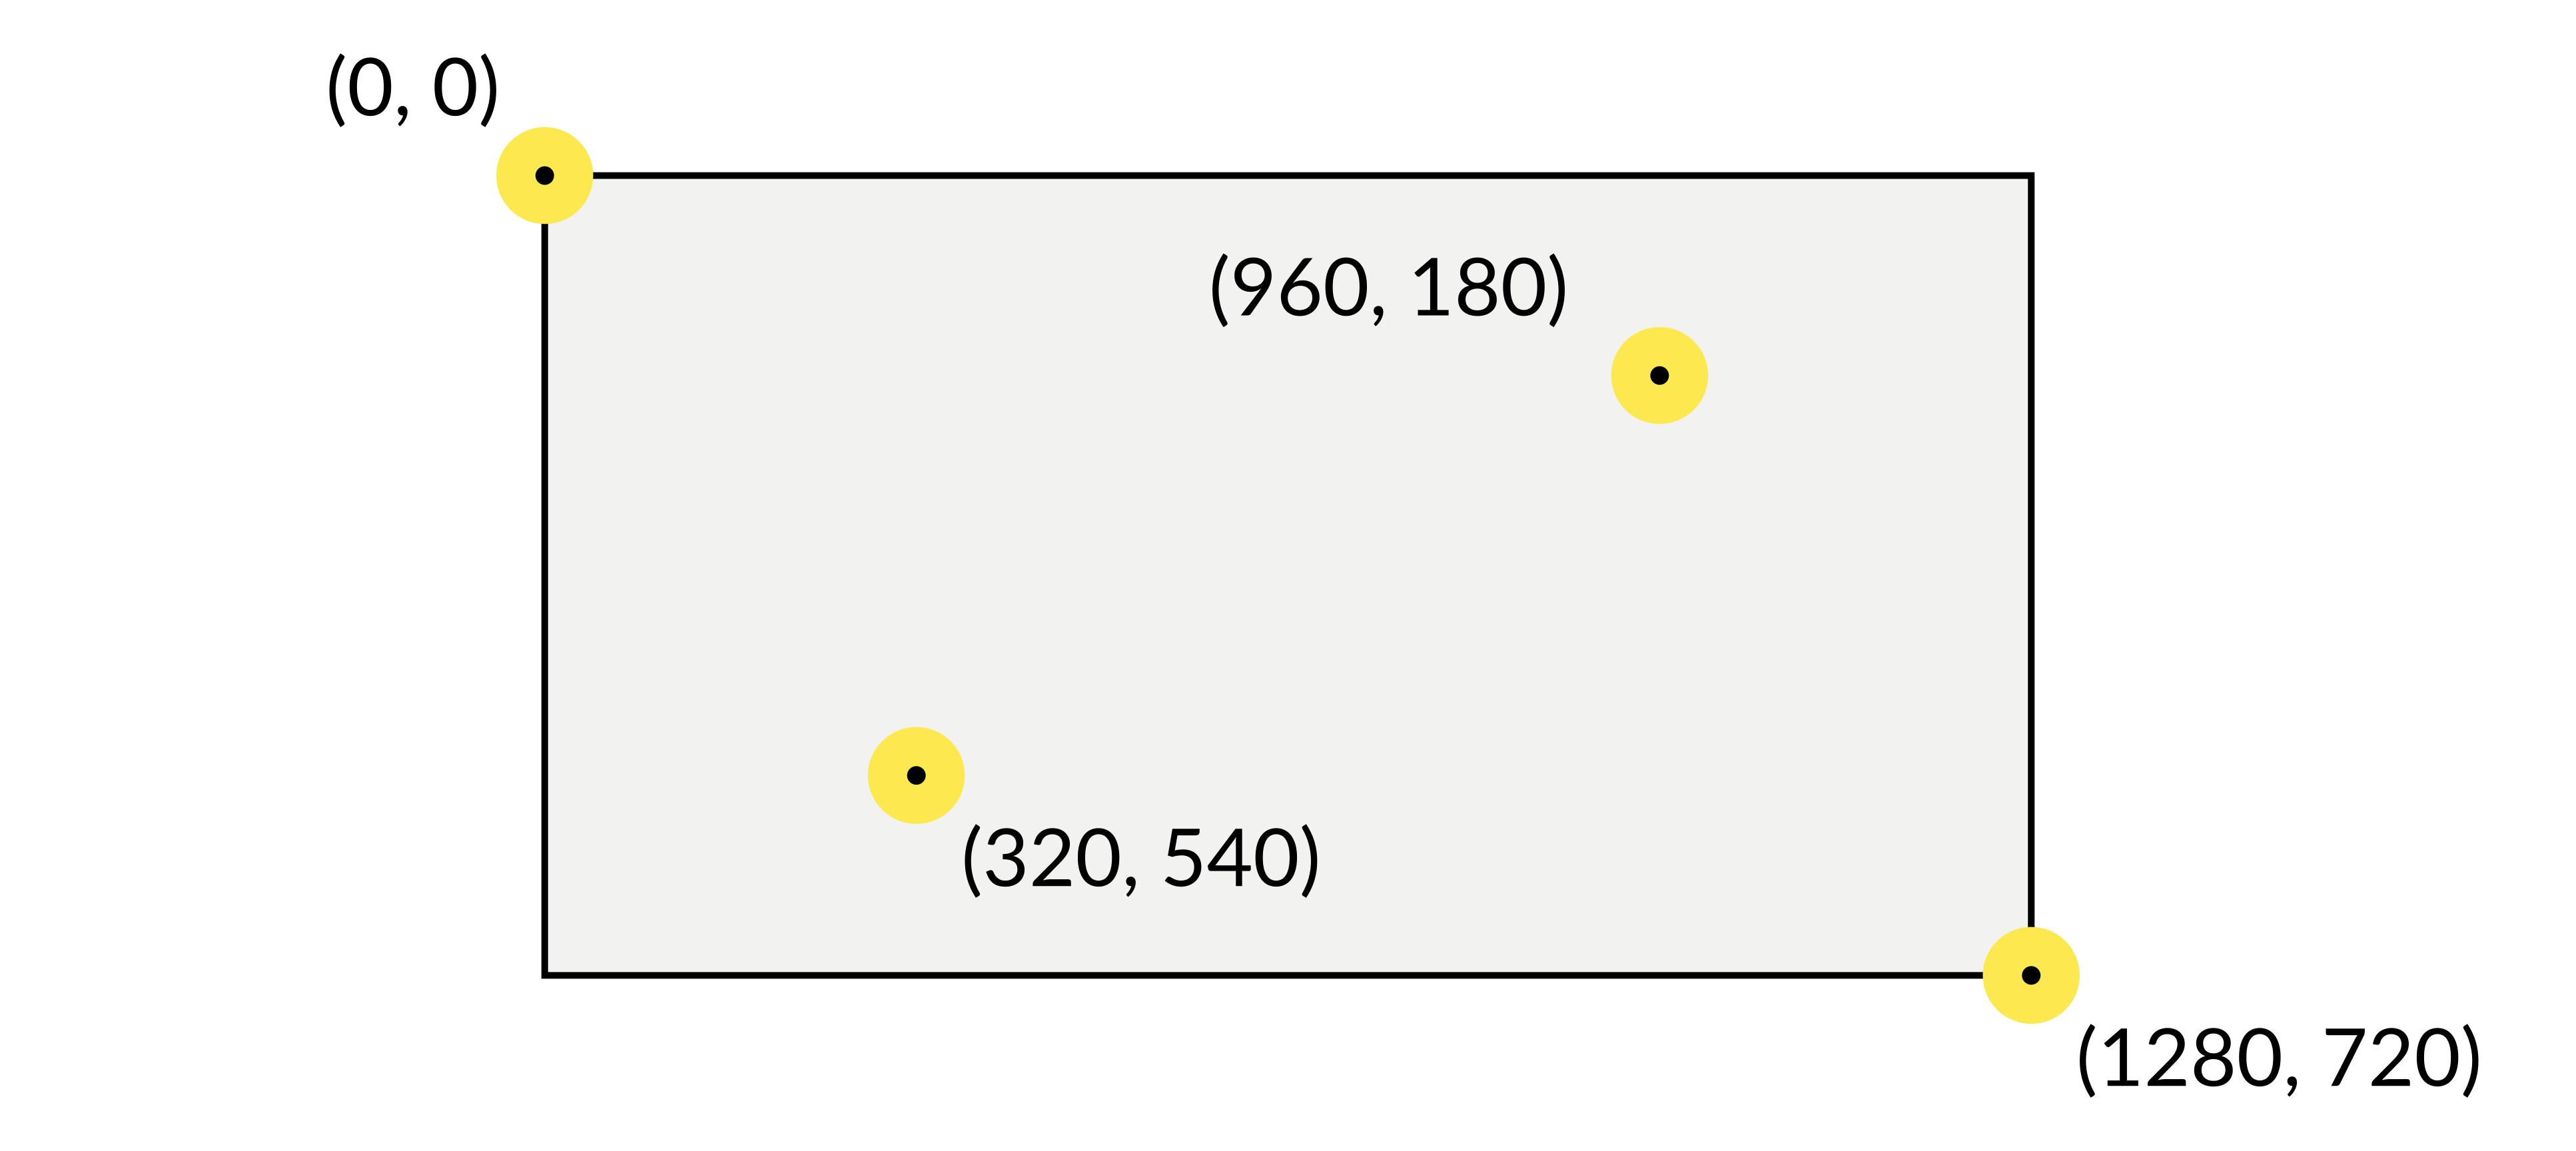 Rys. 5: Współrzędne przykładowych punktów na ramce wideo w formacie 1280x720 Ze względu na specyfikę problemu, algorytm musi działać w czasie rzeczywistym.